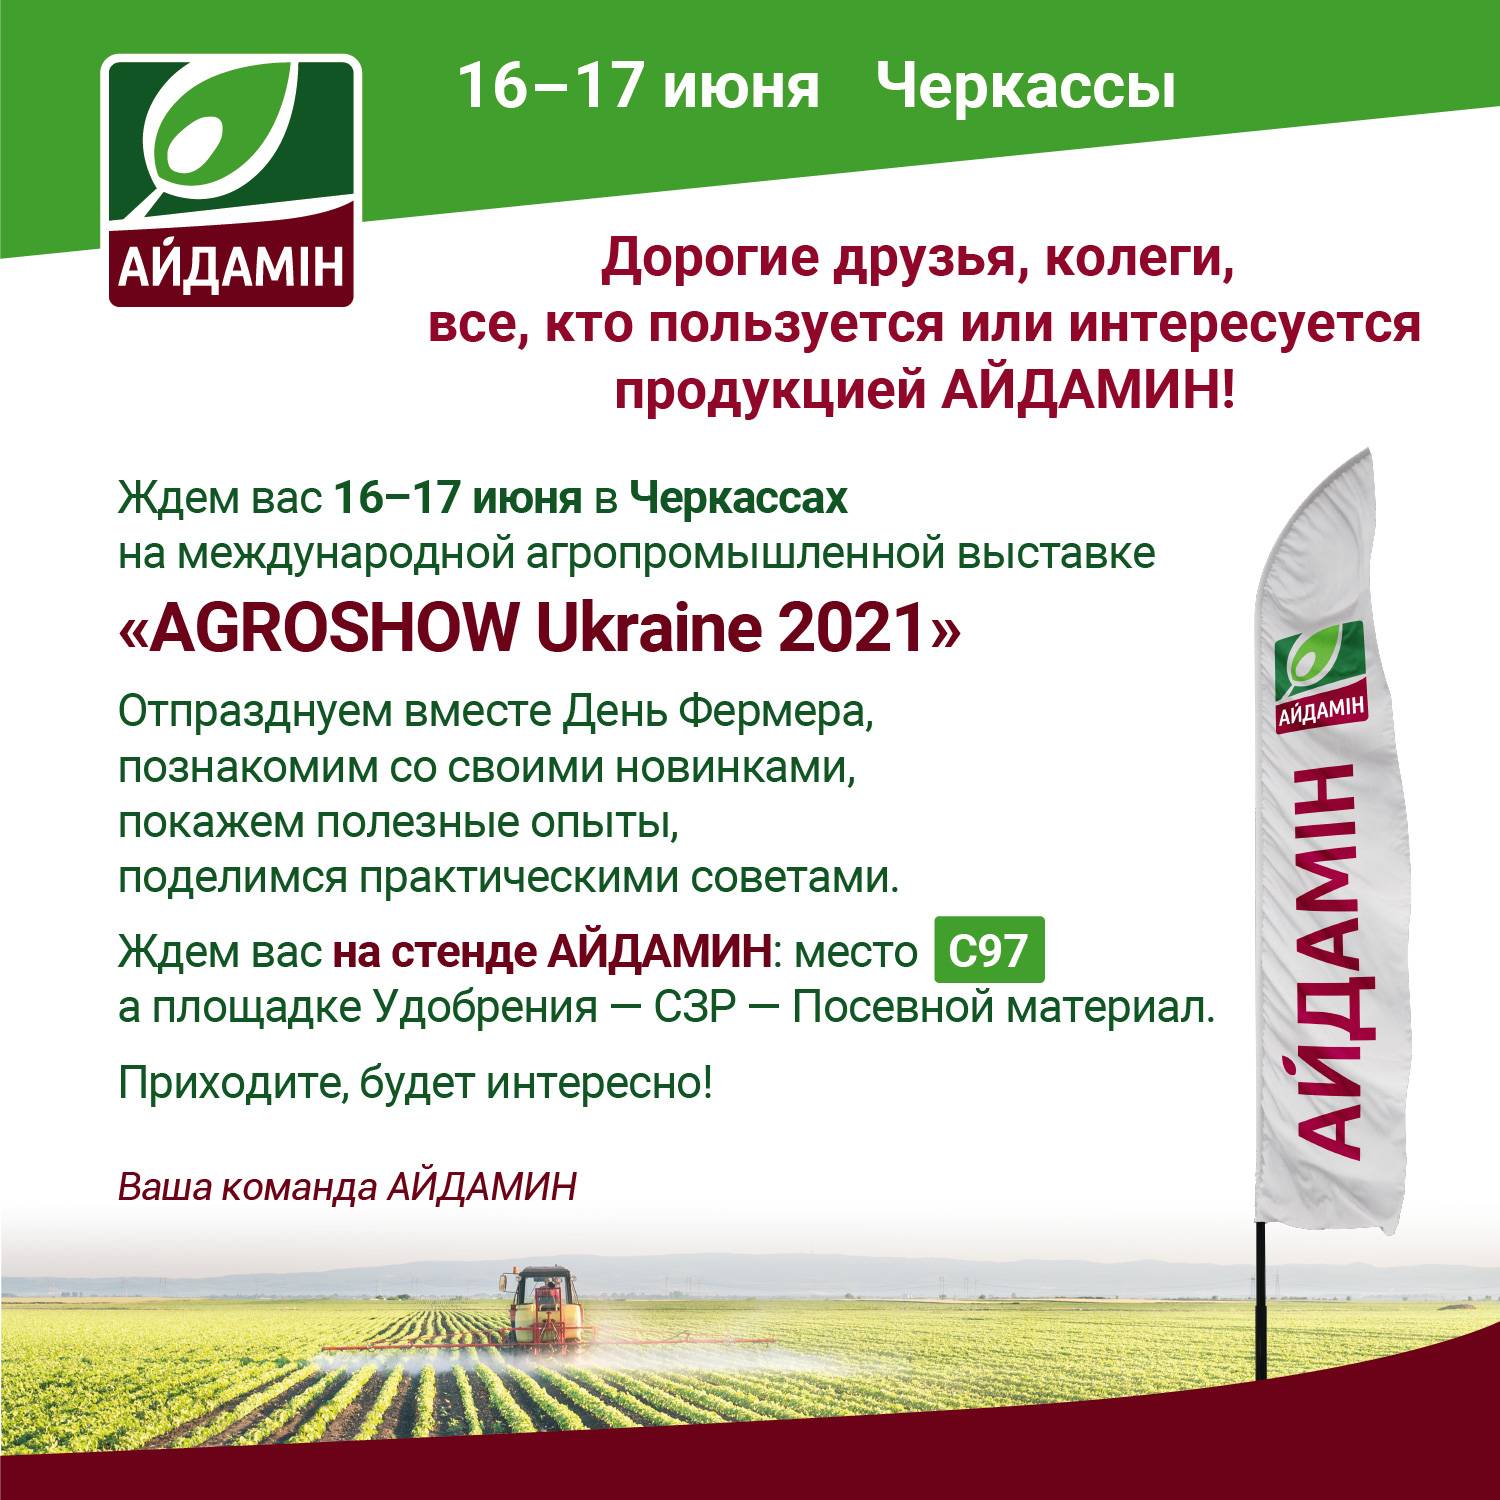 Агрошоу Украина 2021 Айдамин